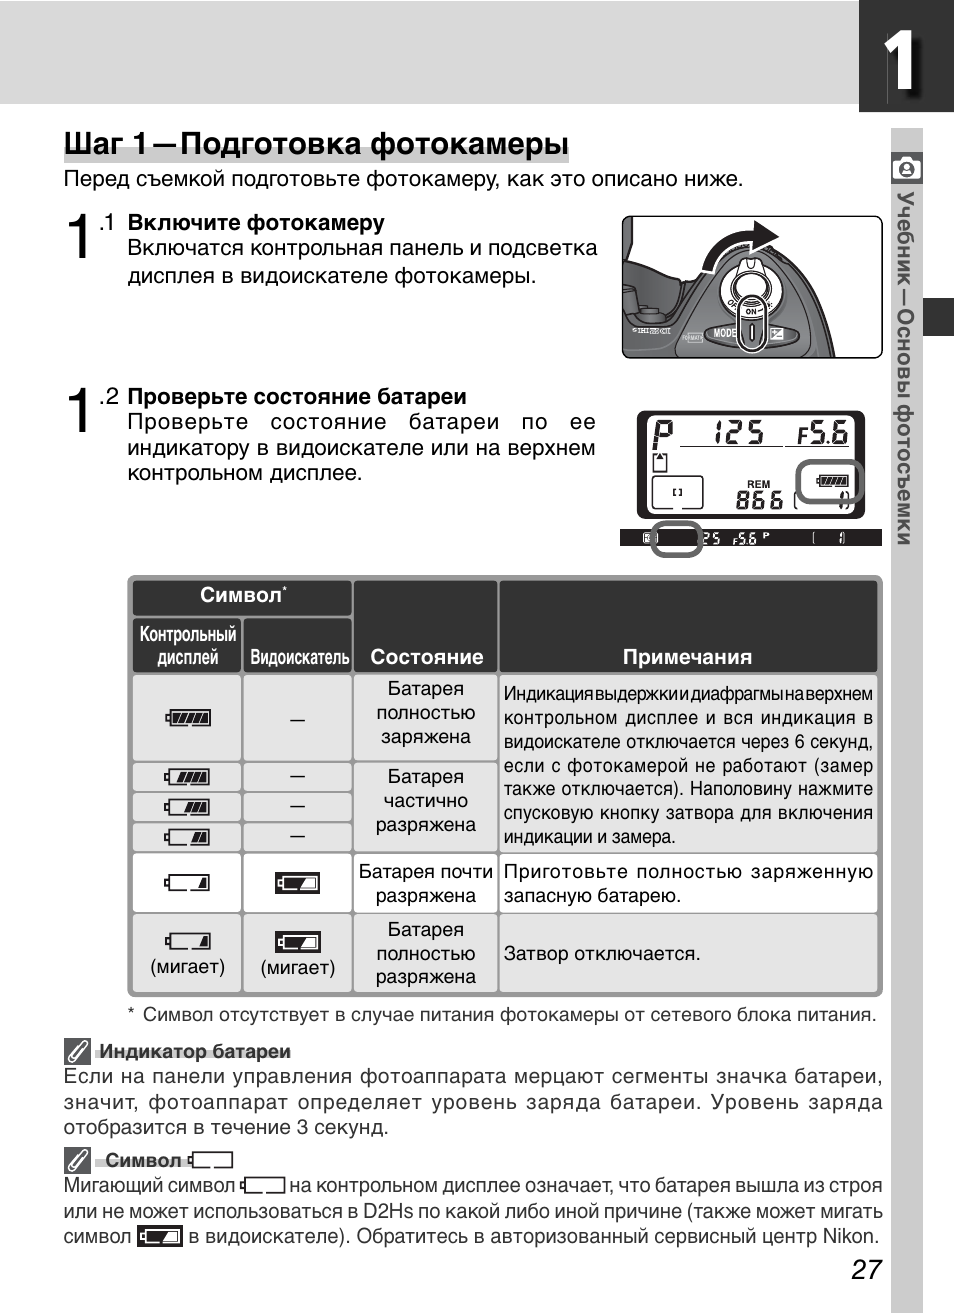 Шаг 1—подготовка фотокамеры | Инструкция по эксплуатации Nikon D2HS | Страница 41 / 271